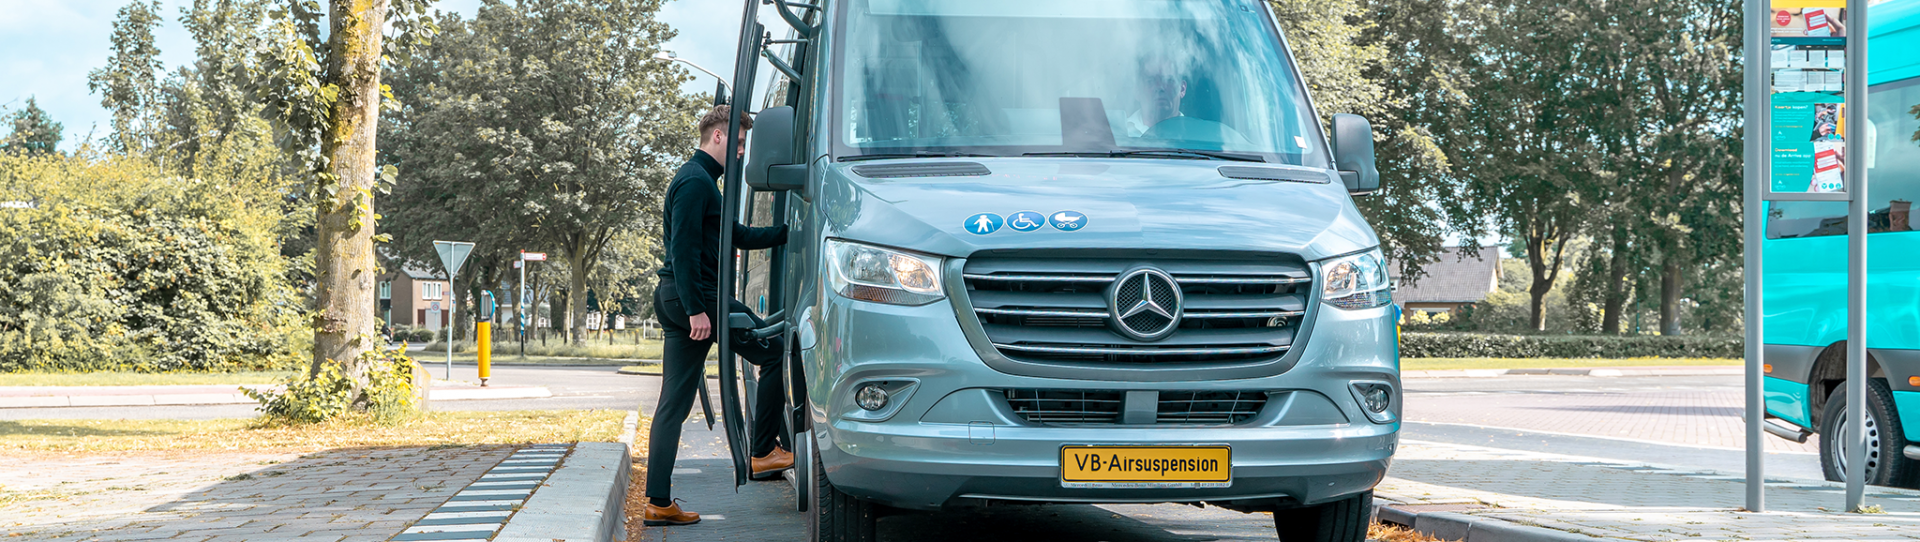 Foto: Mercedes-Benz Sprinter Minibus alla fermata dell'autobus